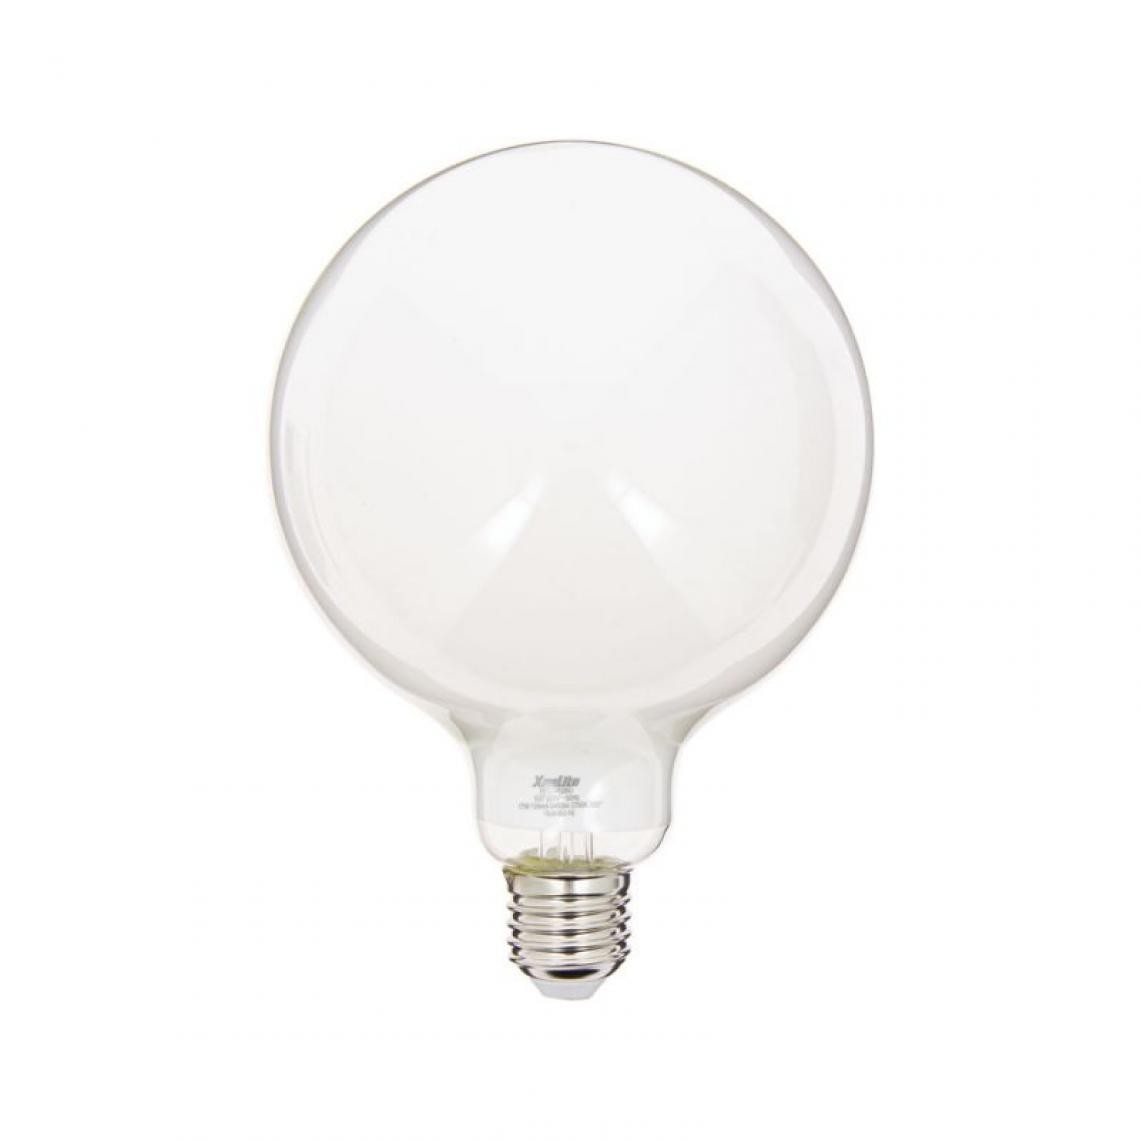 Xanlite - Ampoule LED G125 Opaque, culot E27, conso. 17W, 2452 Lumens, Blanc chaud - Ampoules LED